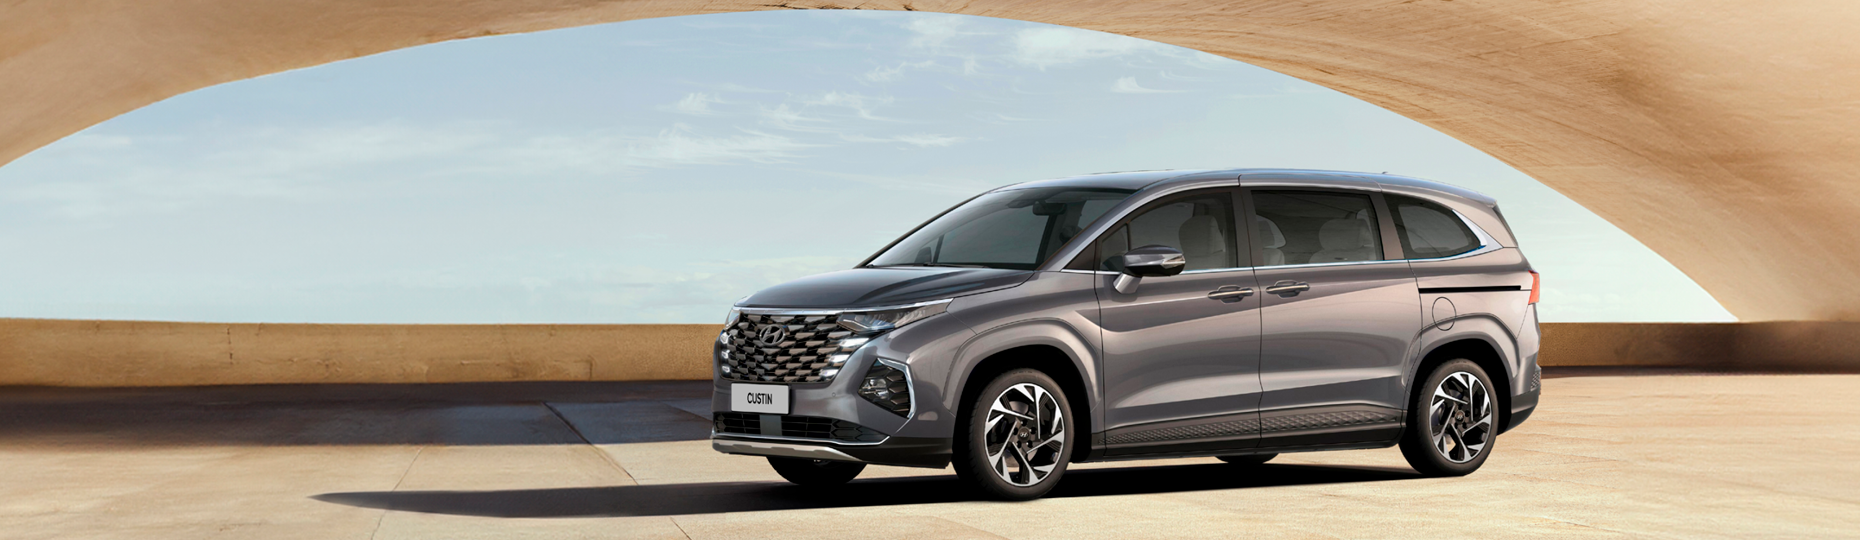 Цены и комплектации нового Hyundai Custin в Шымкенте